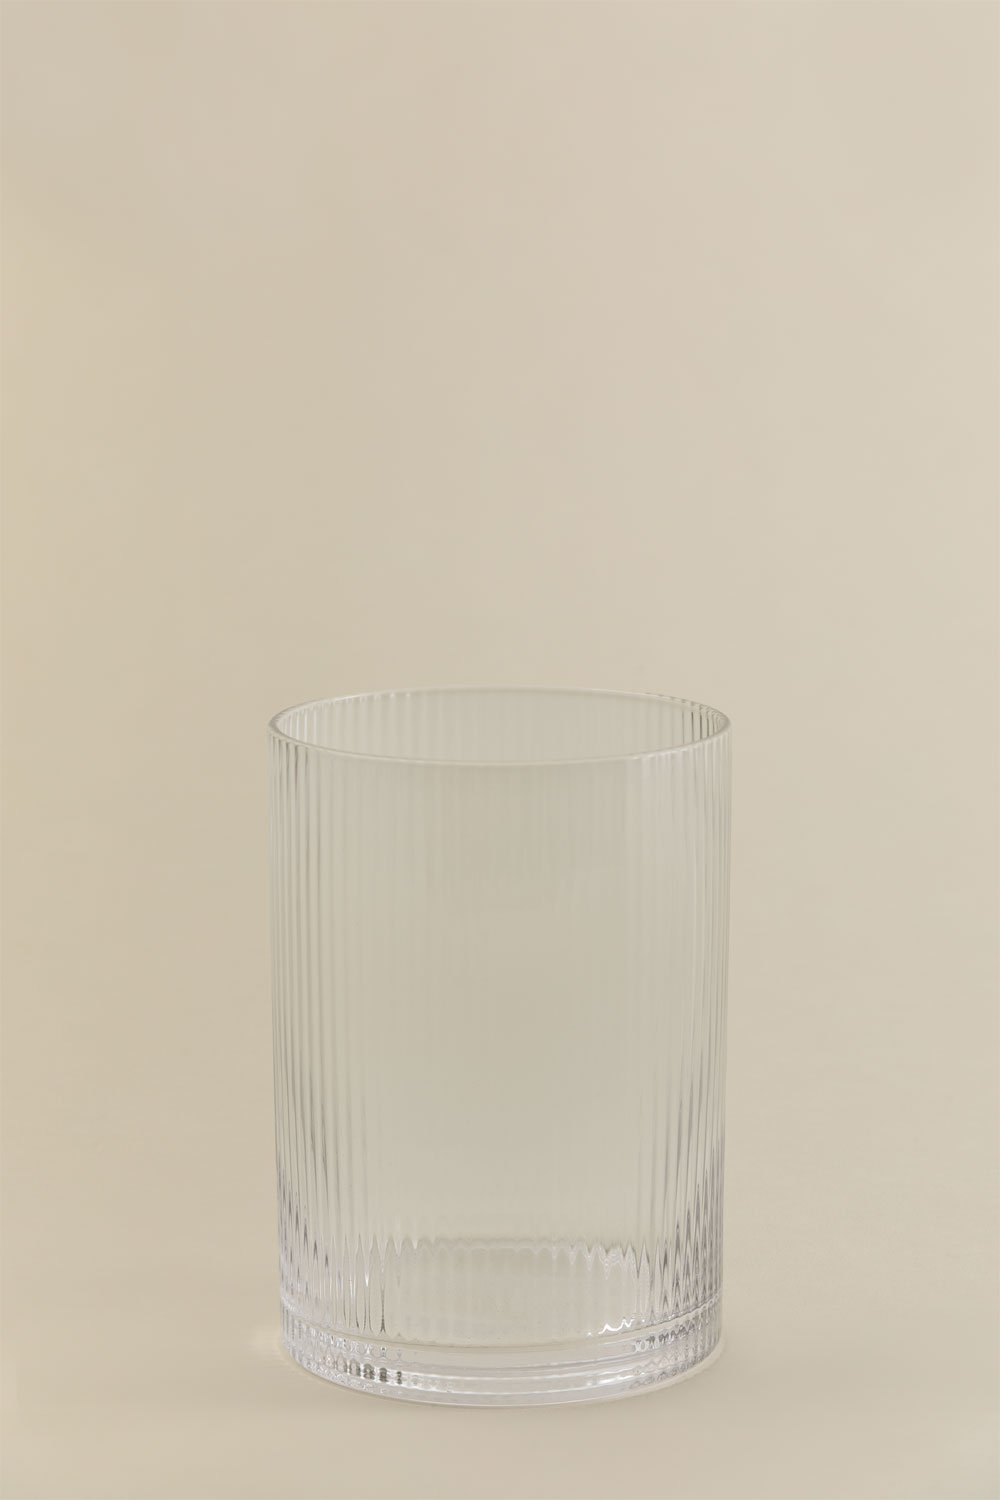 Pak van 4 glazen glazen 34 cl Welian, galerij beeld 1